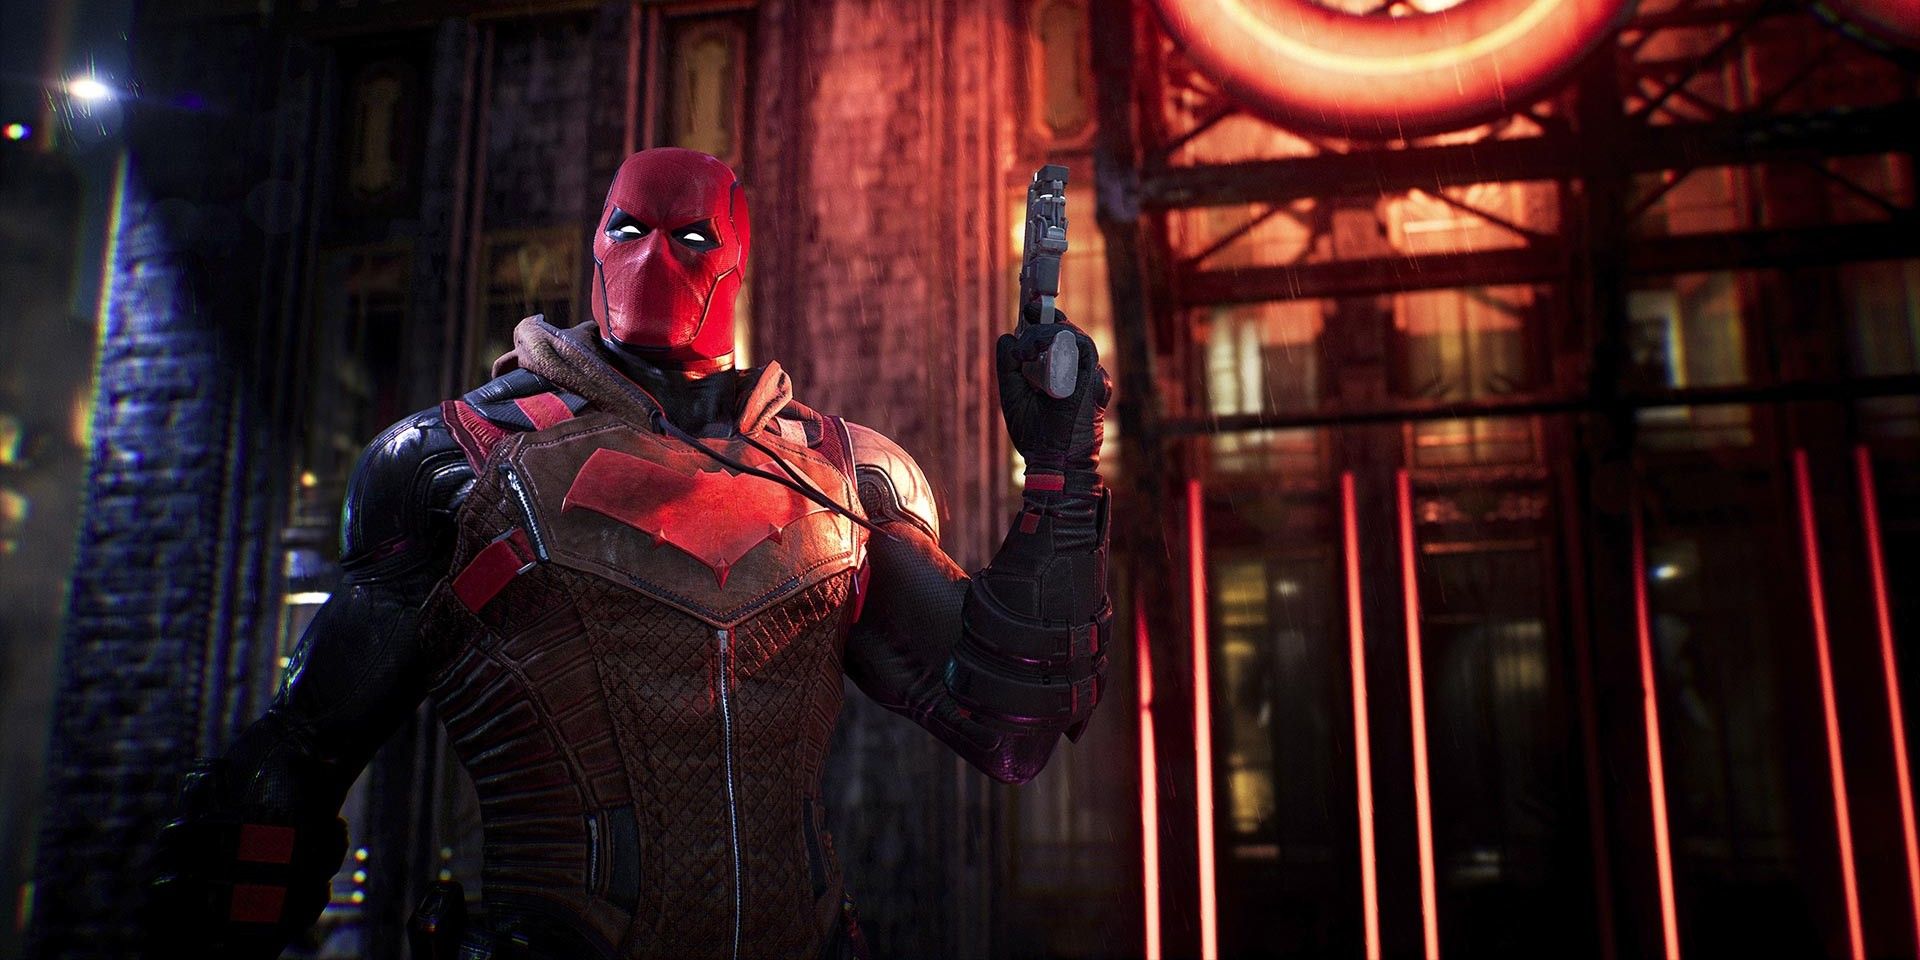 Los héroes de la familia de murciélagos de Gotham Knights subvertirán un juego de rol clásico